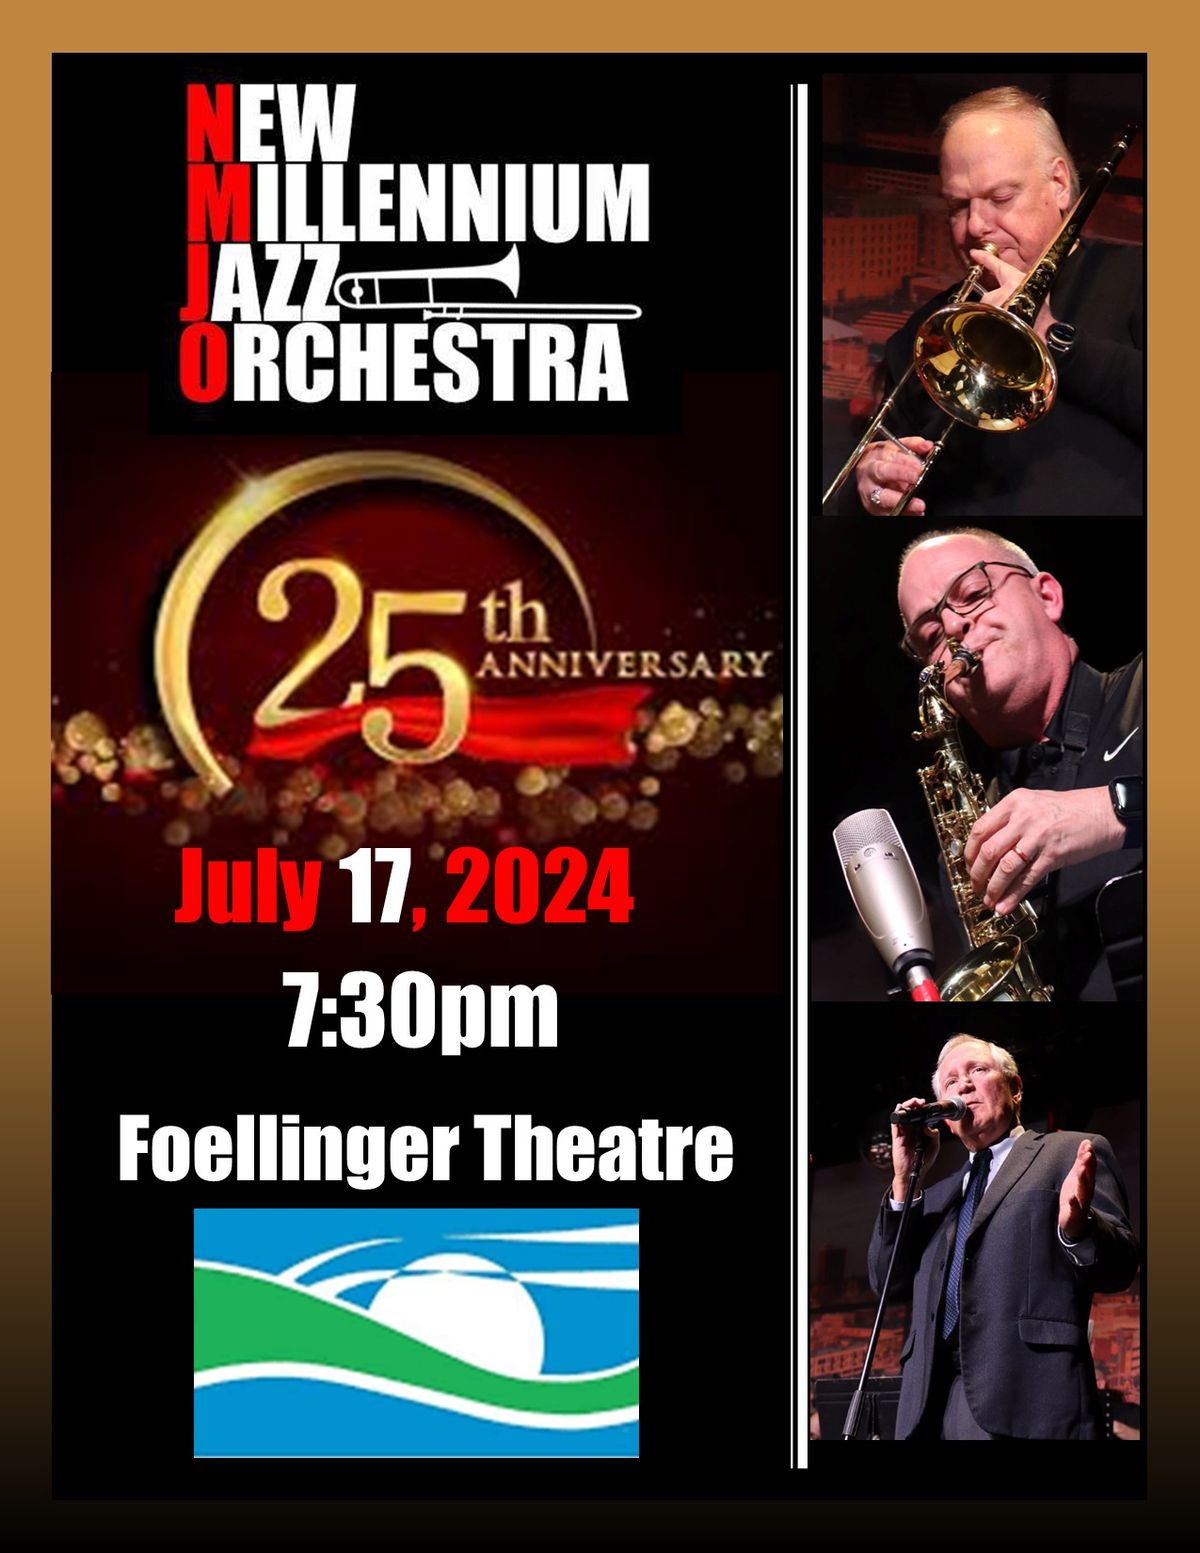 New Millennium Jazz Orchestra's 25th Anniversary Concert